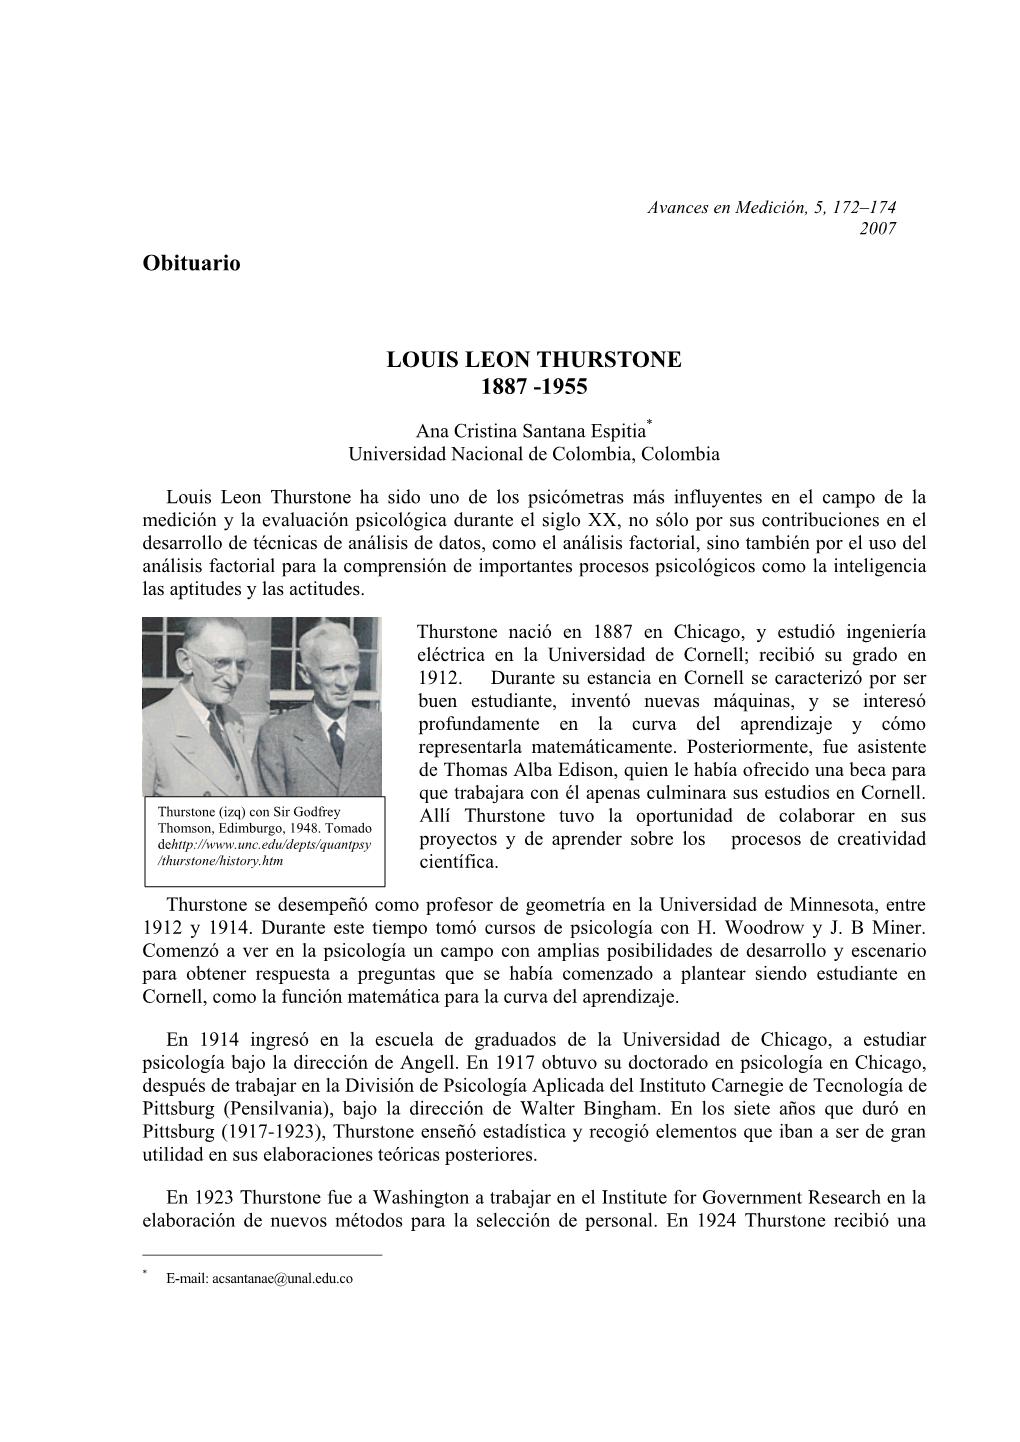 Obituario LOUIS LEON THURSTONE 1887 -1955